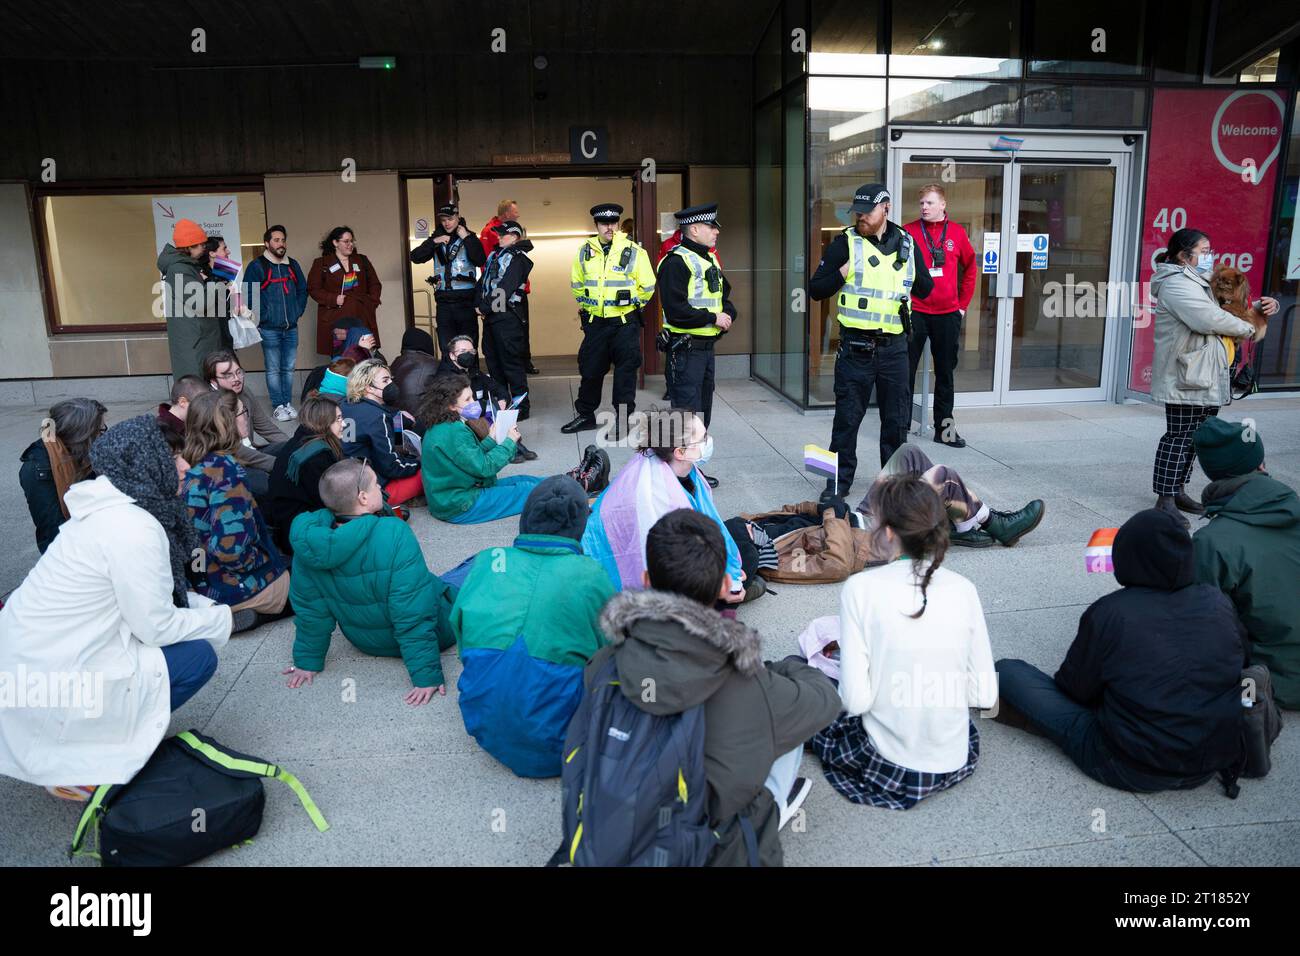 Edimbourg 11 octobre 2023. Les manifestants Pro Trans organisent une manifestation et tentent d'empêcher les détenteurs de billets d'entrer dans le lieu de l'université d'Édimbourg Banque D'Images